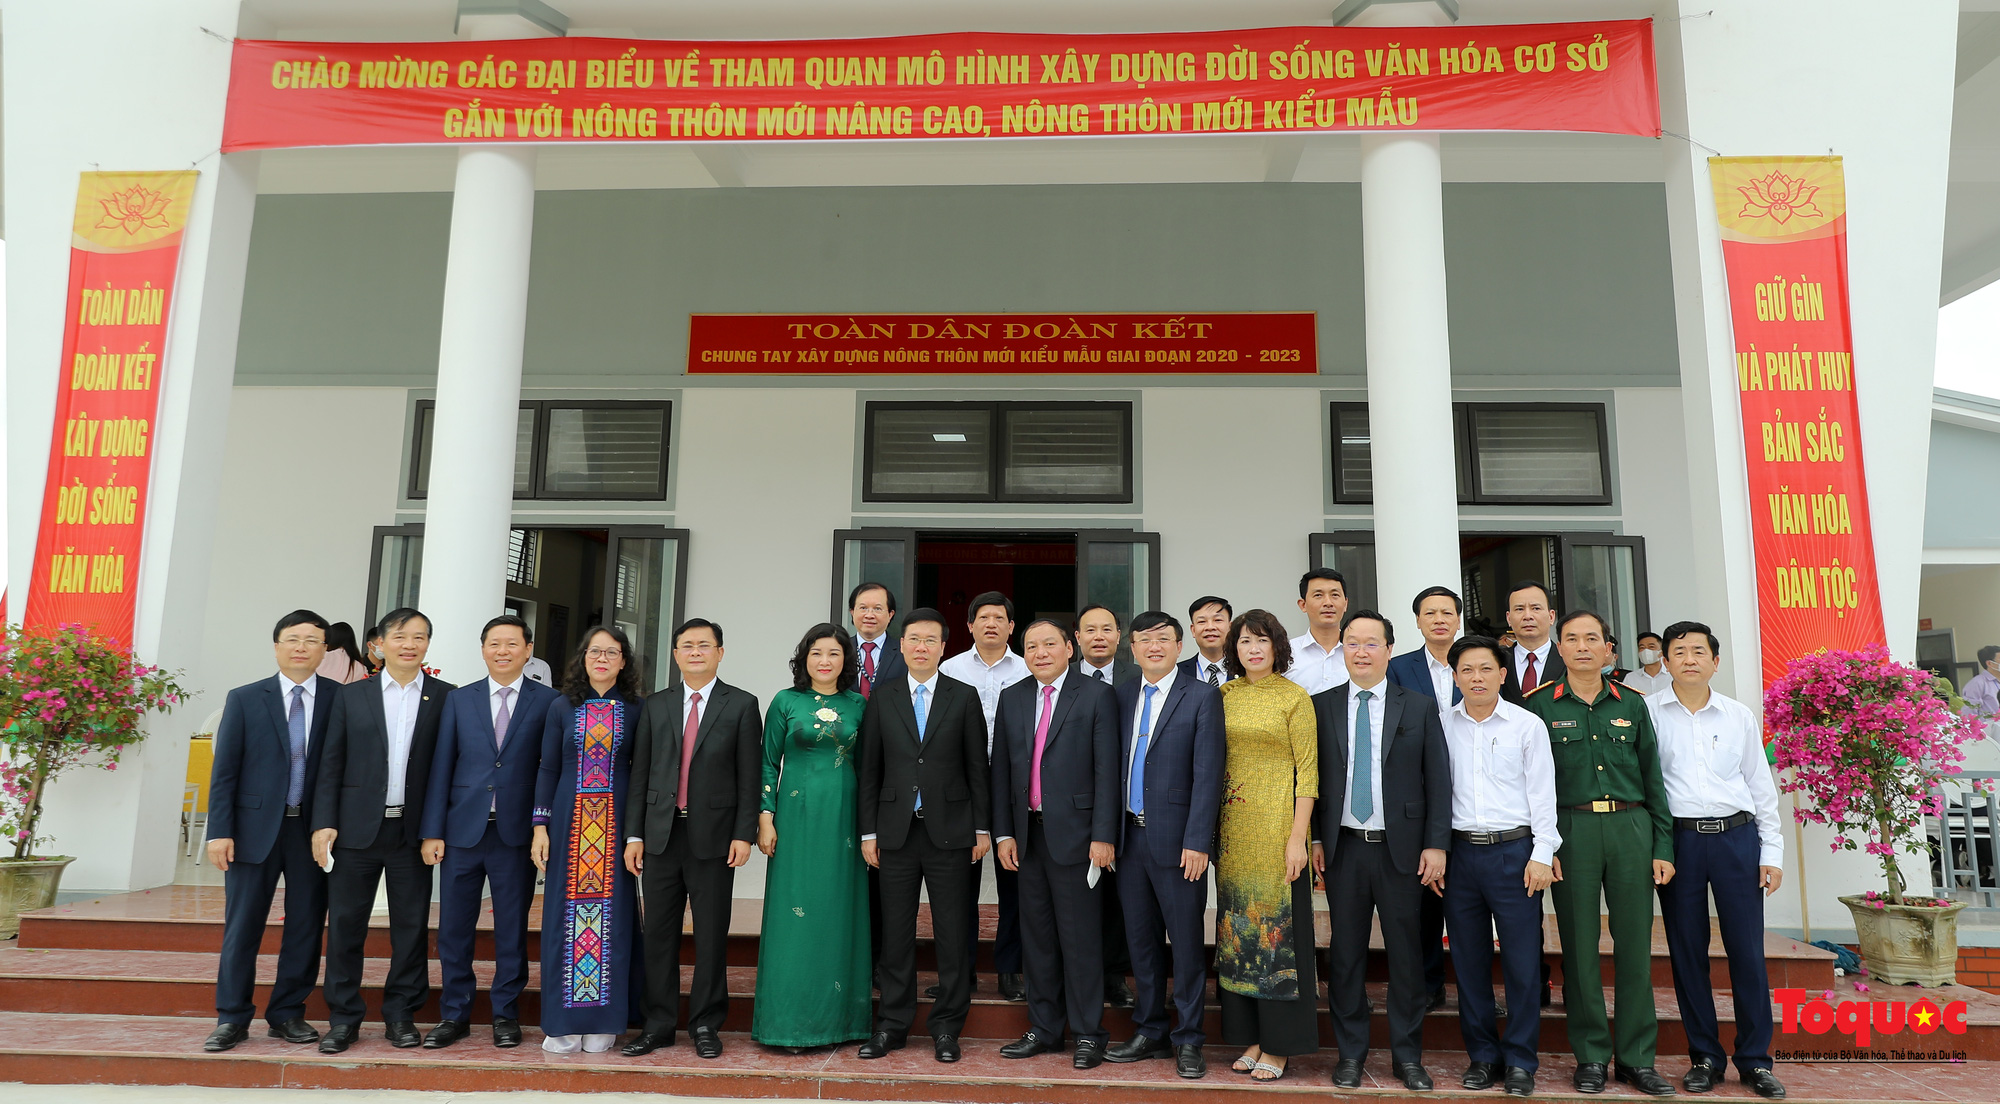 Lãnh đạo Đảng và Nhà nước thăm mô hình văn hóa cơ sở gắn nông thôn mới nâng cao, kiểu mẫu tại Nam Đàn - Ảnh 13.